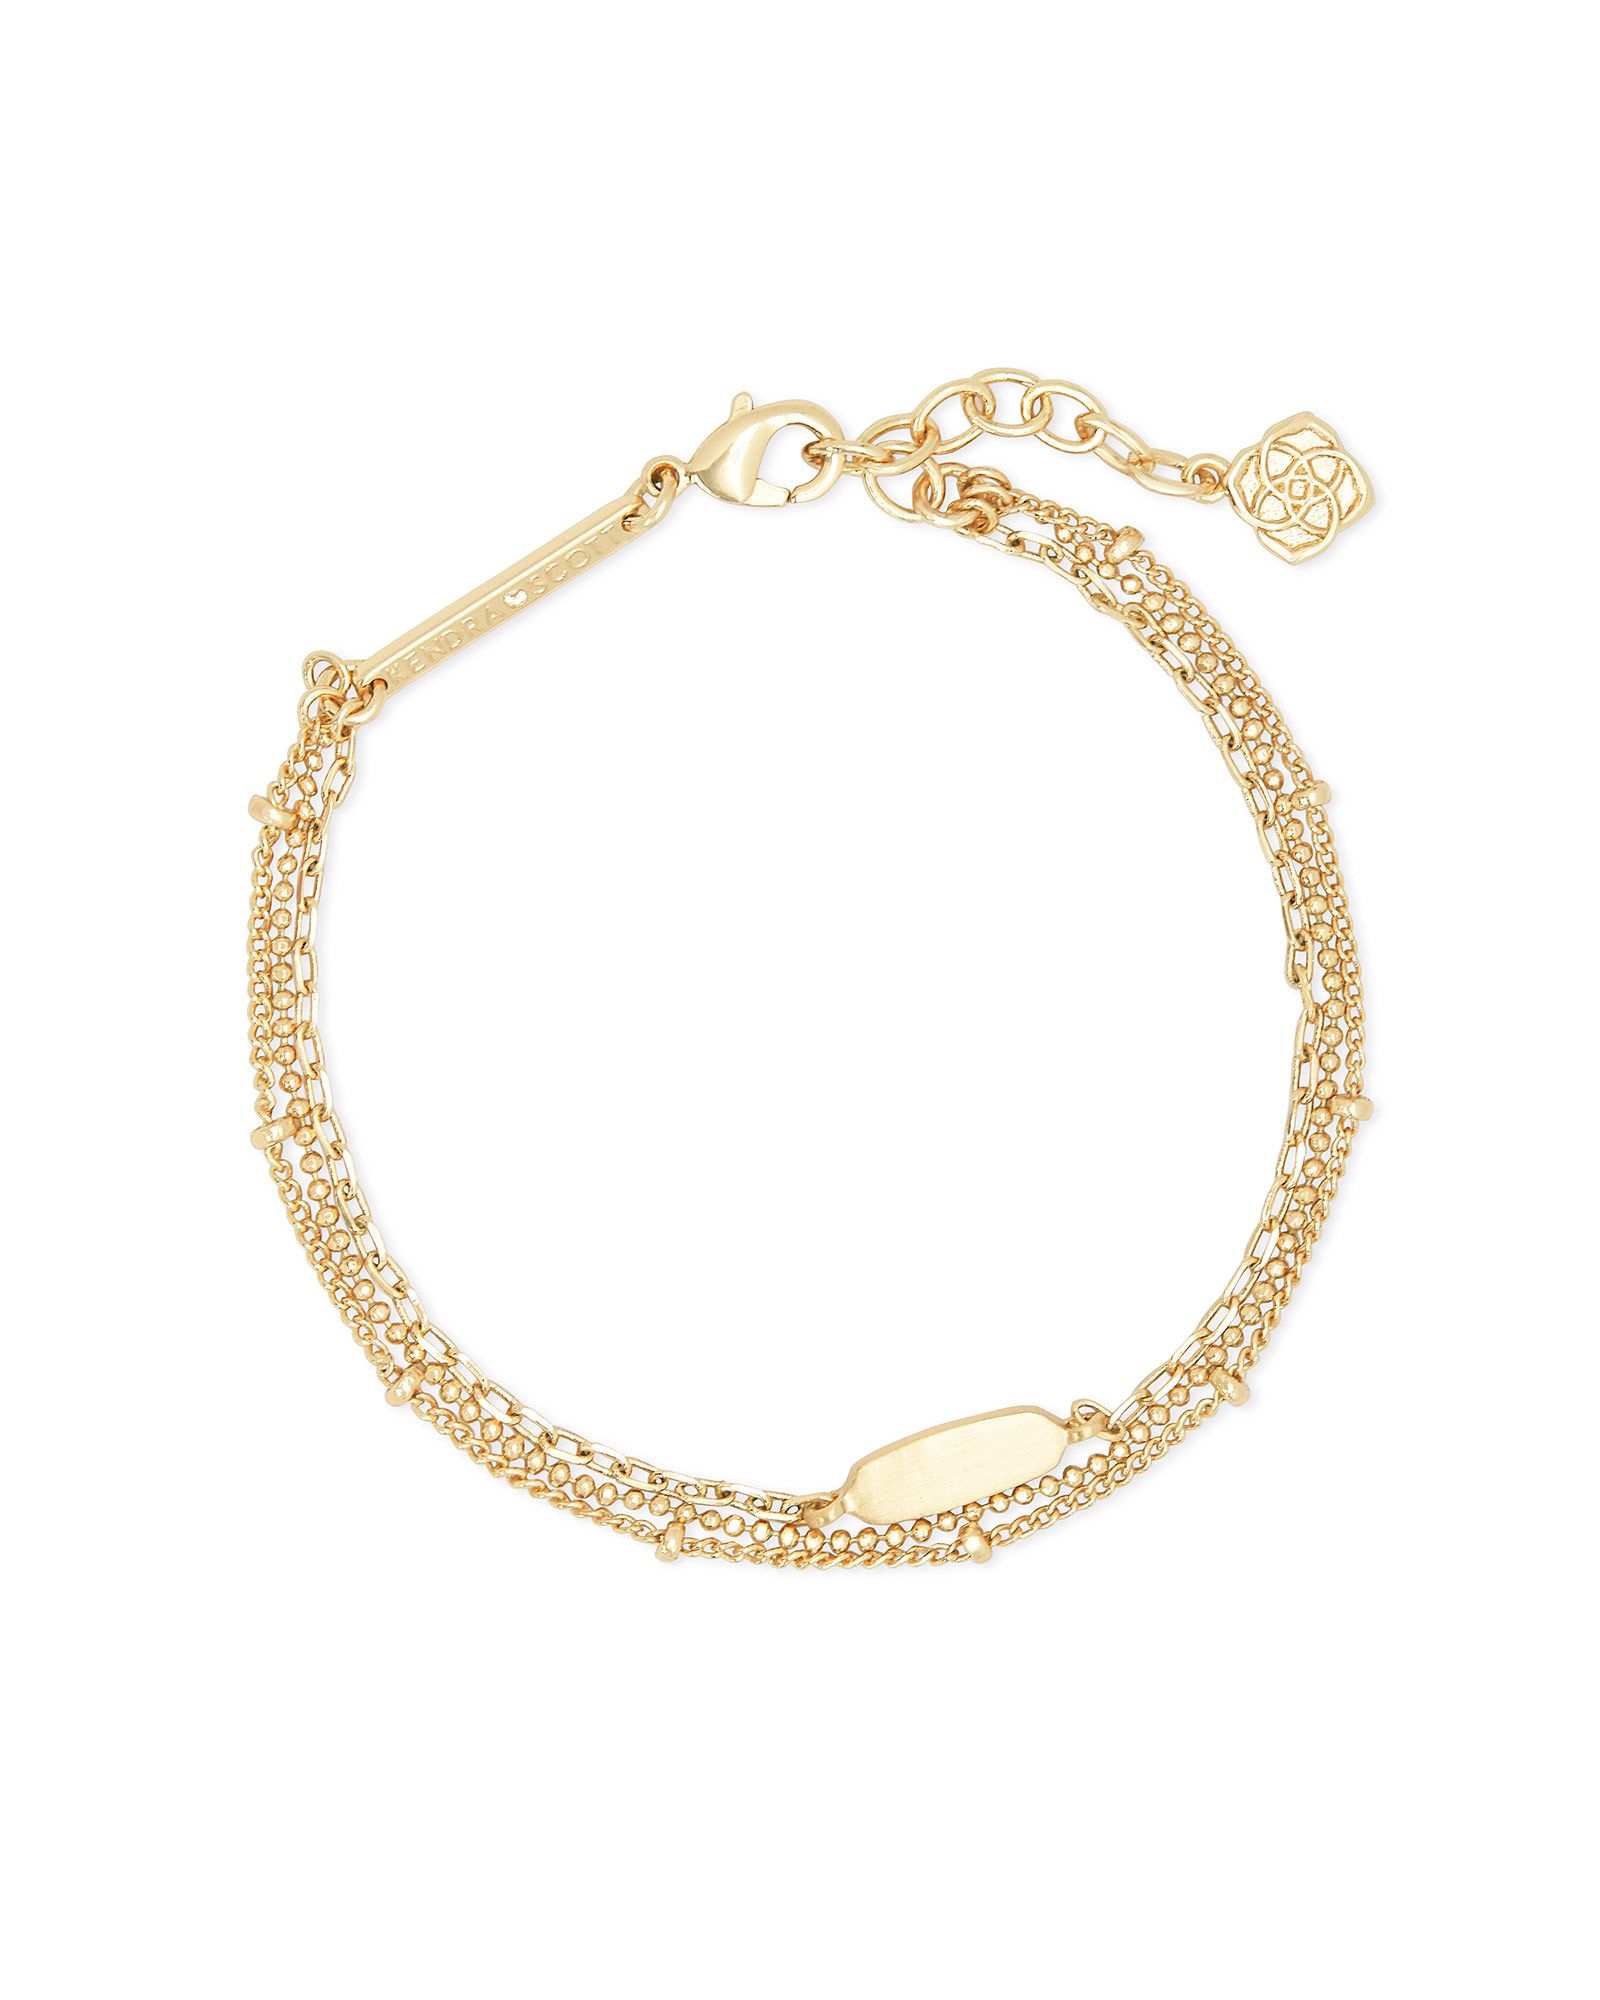 Fern Multi Strand Bracelet in Gold | Kendra Scott | Kendra Scott